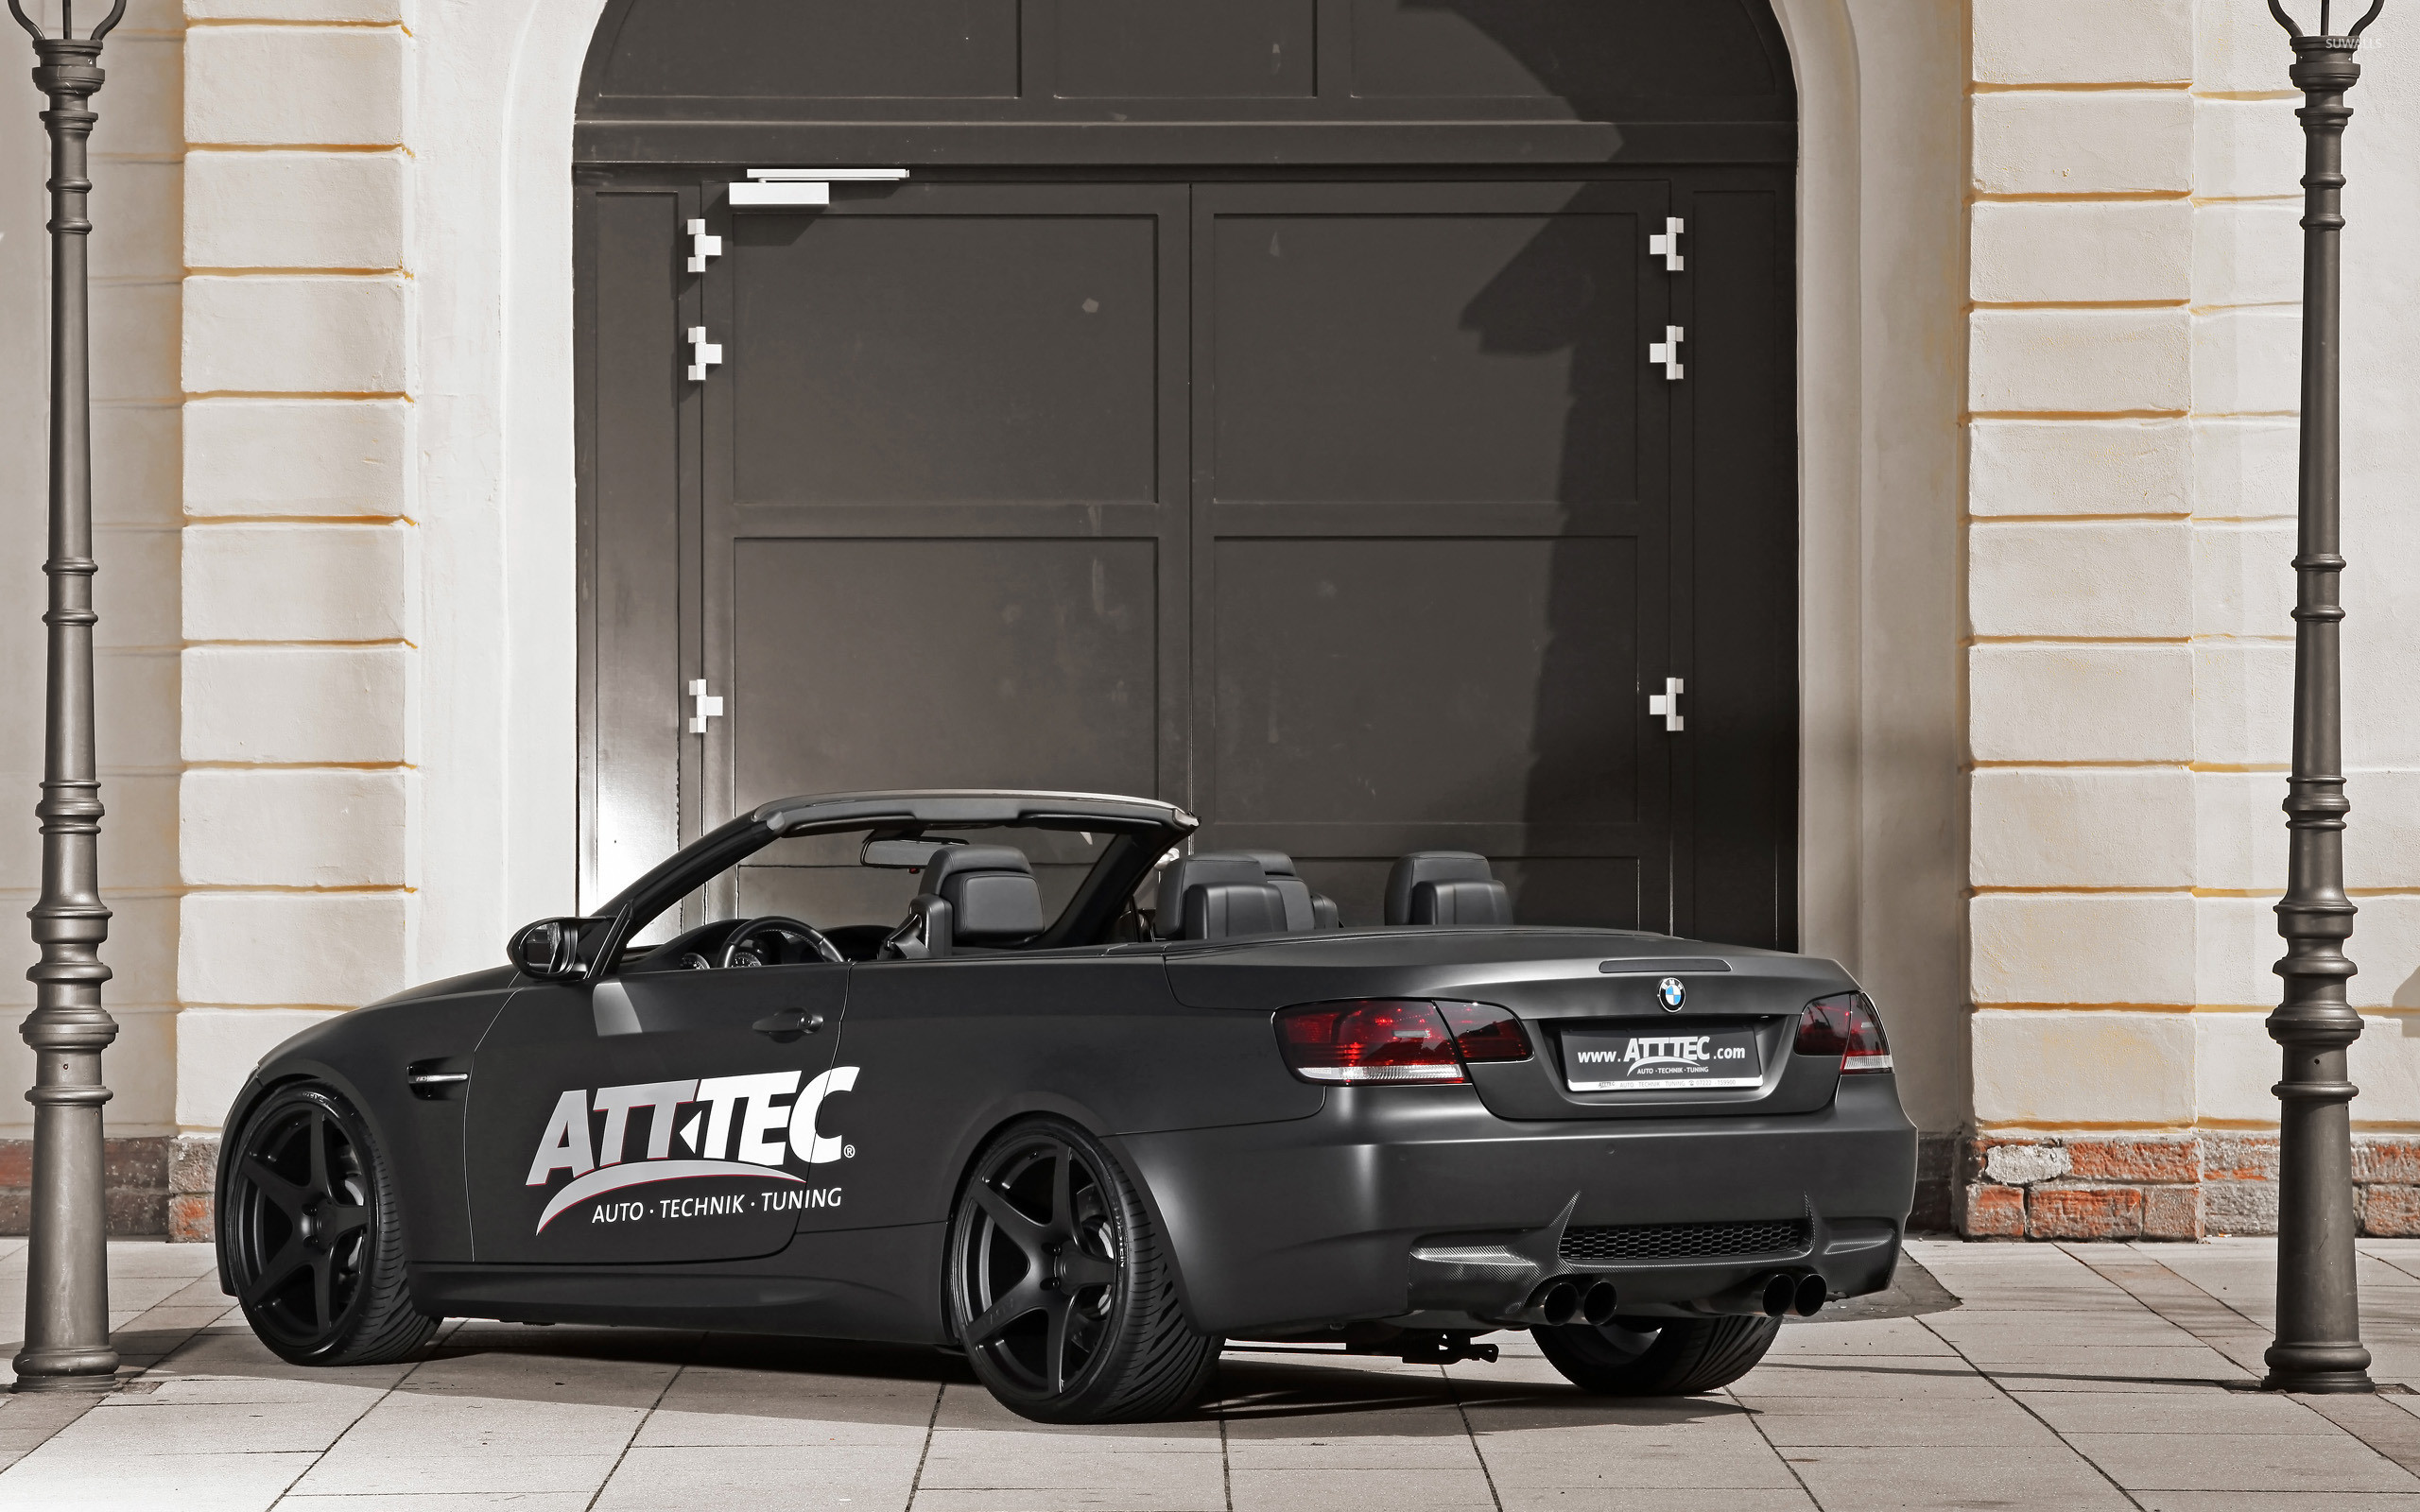 2560x1600 2012 ATT TEC BMW M3 convertible wallpaper